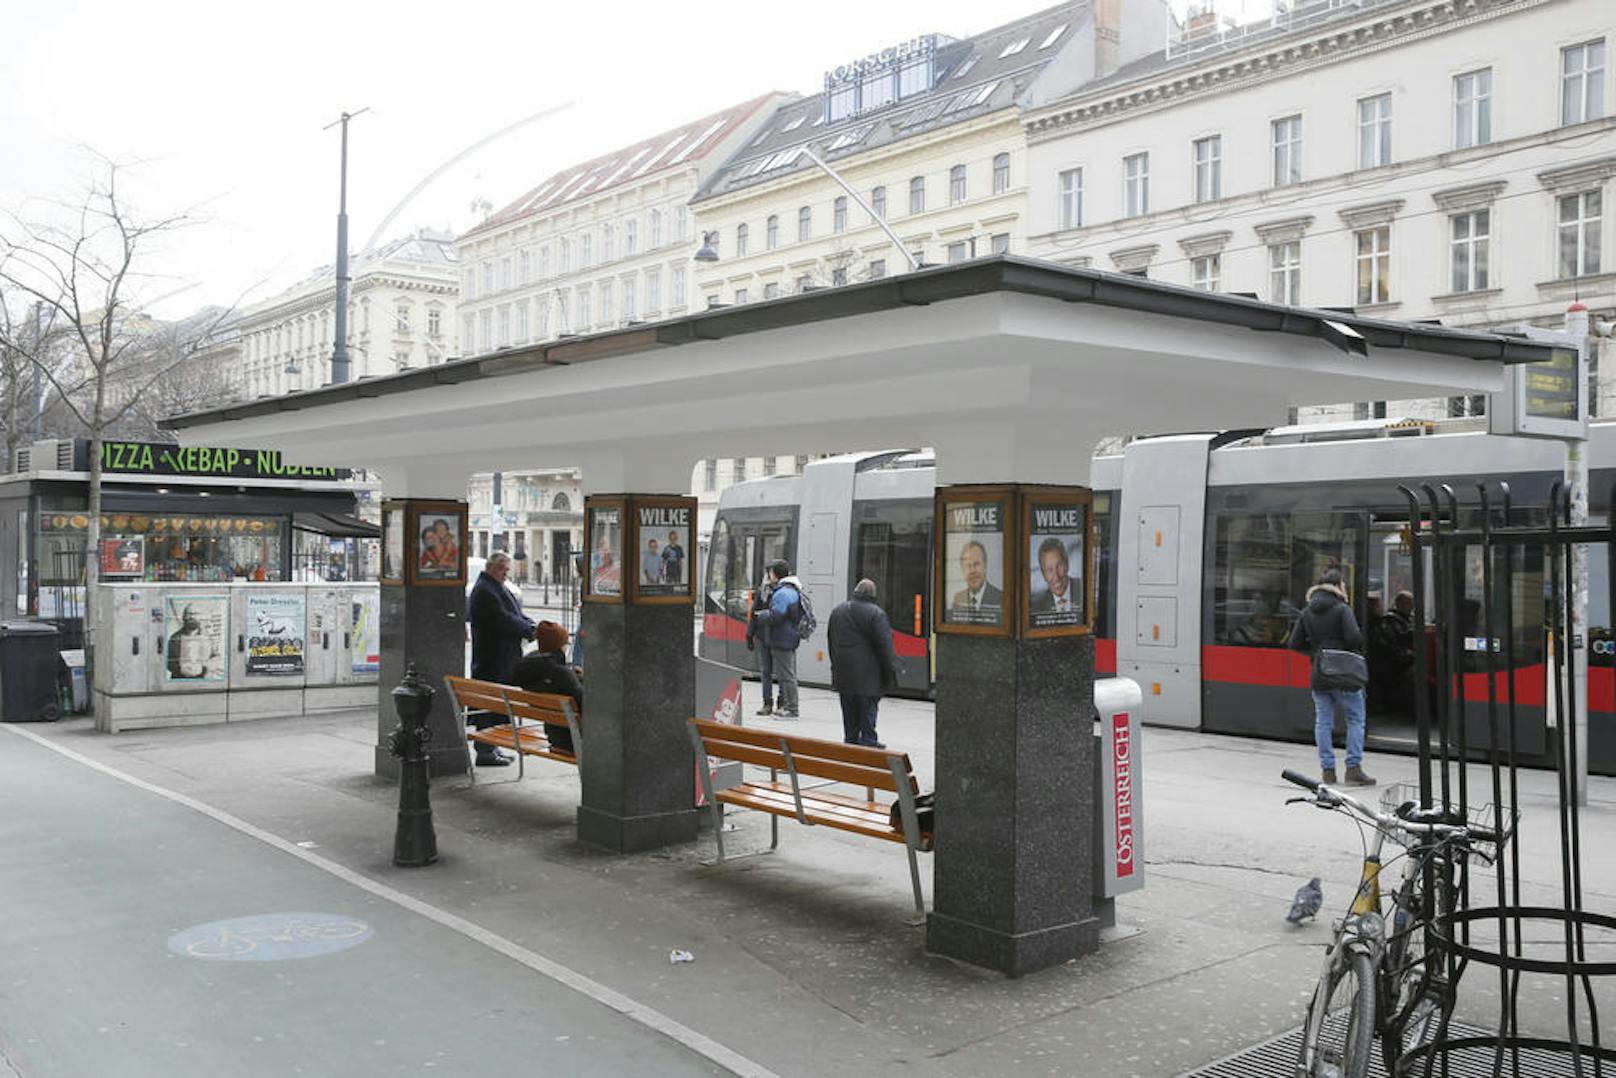 Die Bim-Station "Kärntner Ring, Oper" wird in "Oper, Karlsplatz" umbenannt.